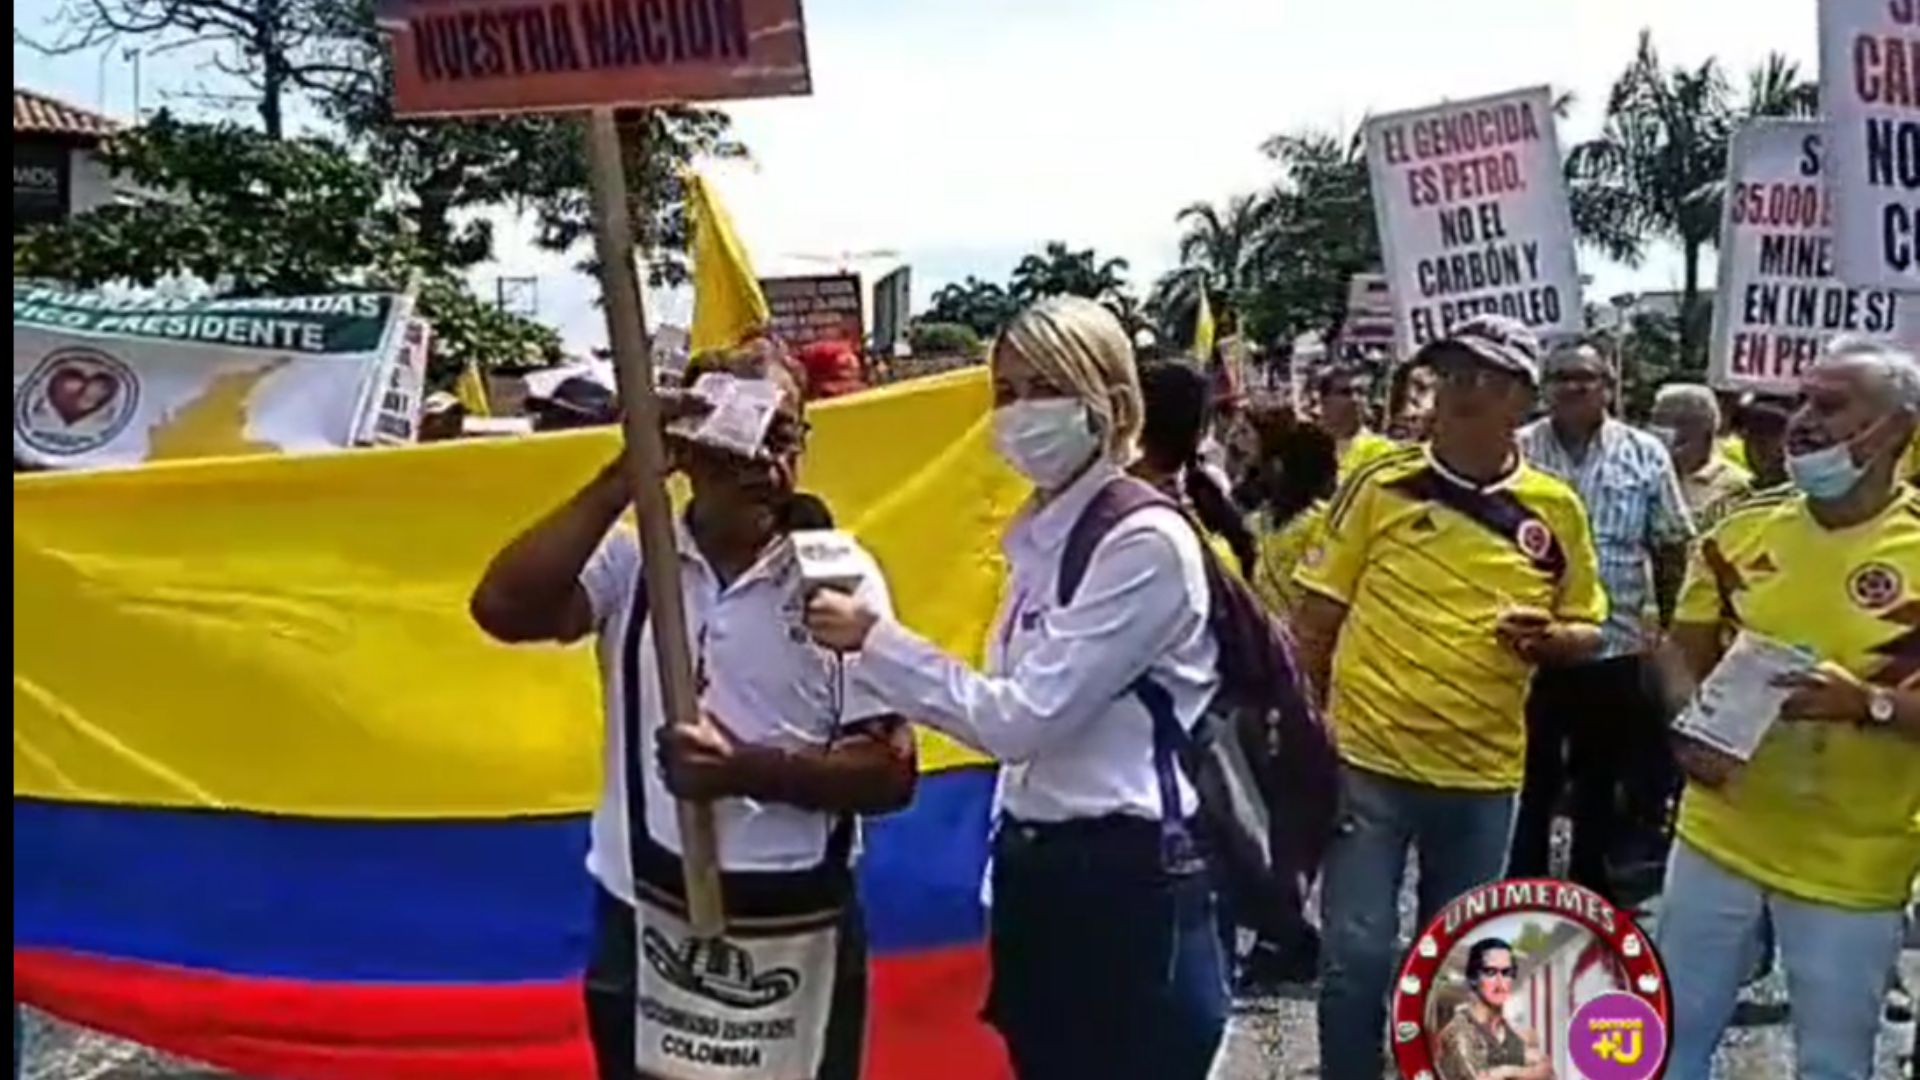 Miles de usuarios se movilizaron este 26 de septiembre en Colombia y en diferentes puntos del mundo, dando afirmaciones que fueron controversiales. Foto: Twitter @EnriqueTeacher1